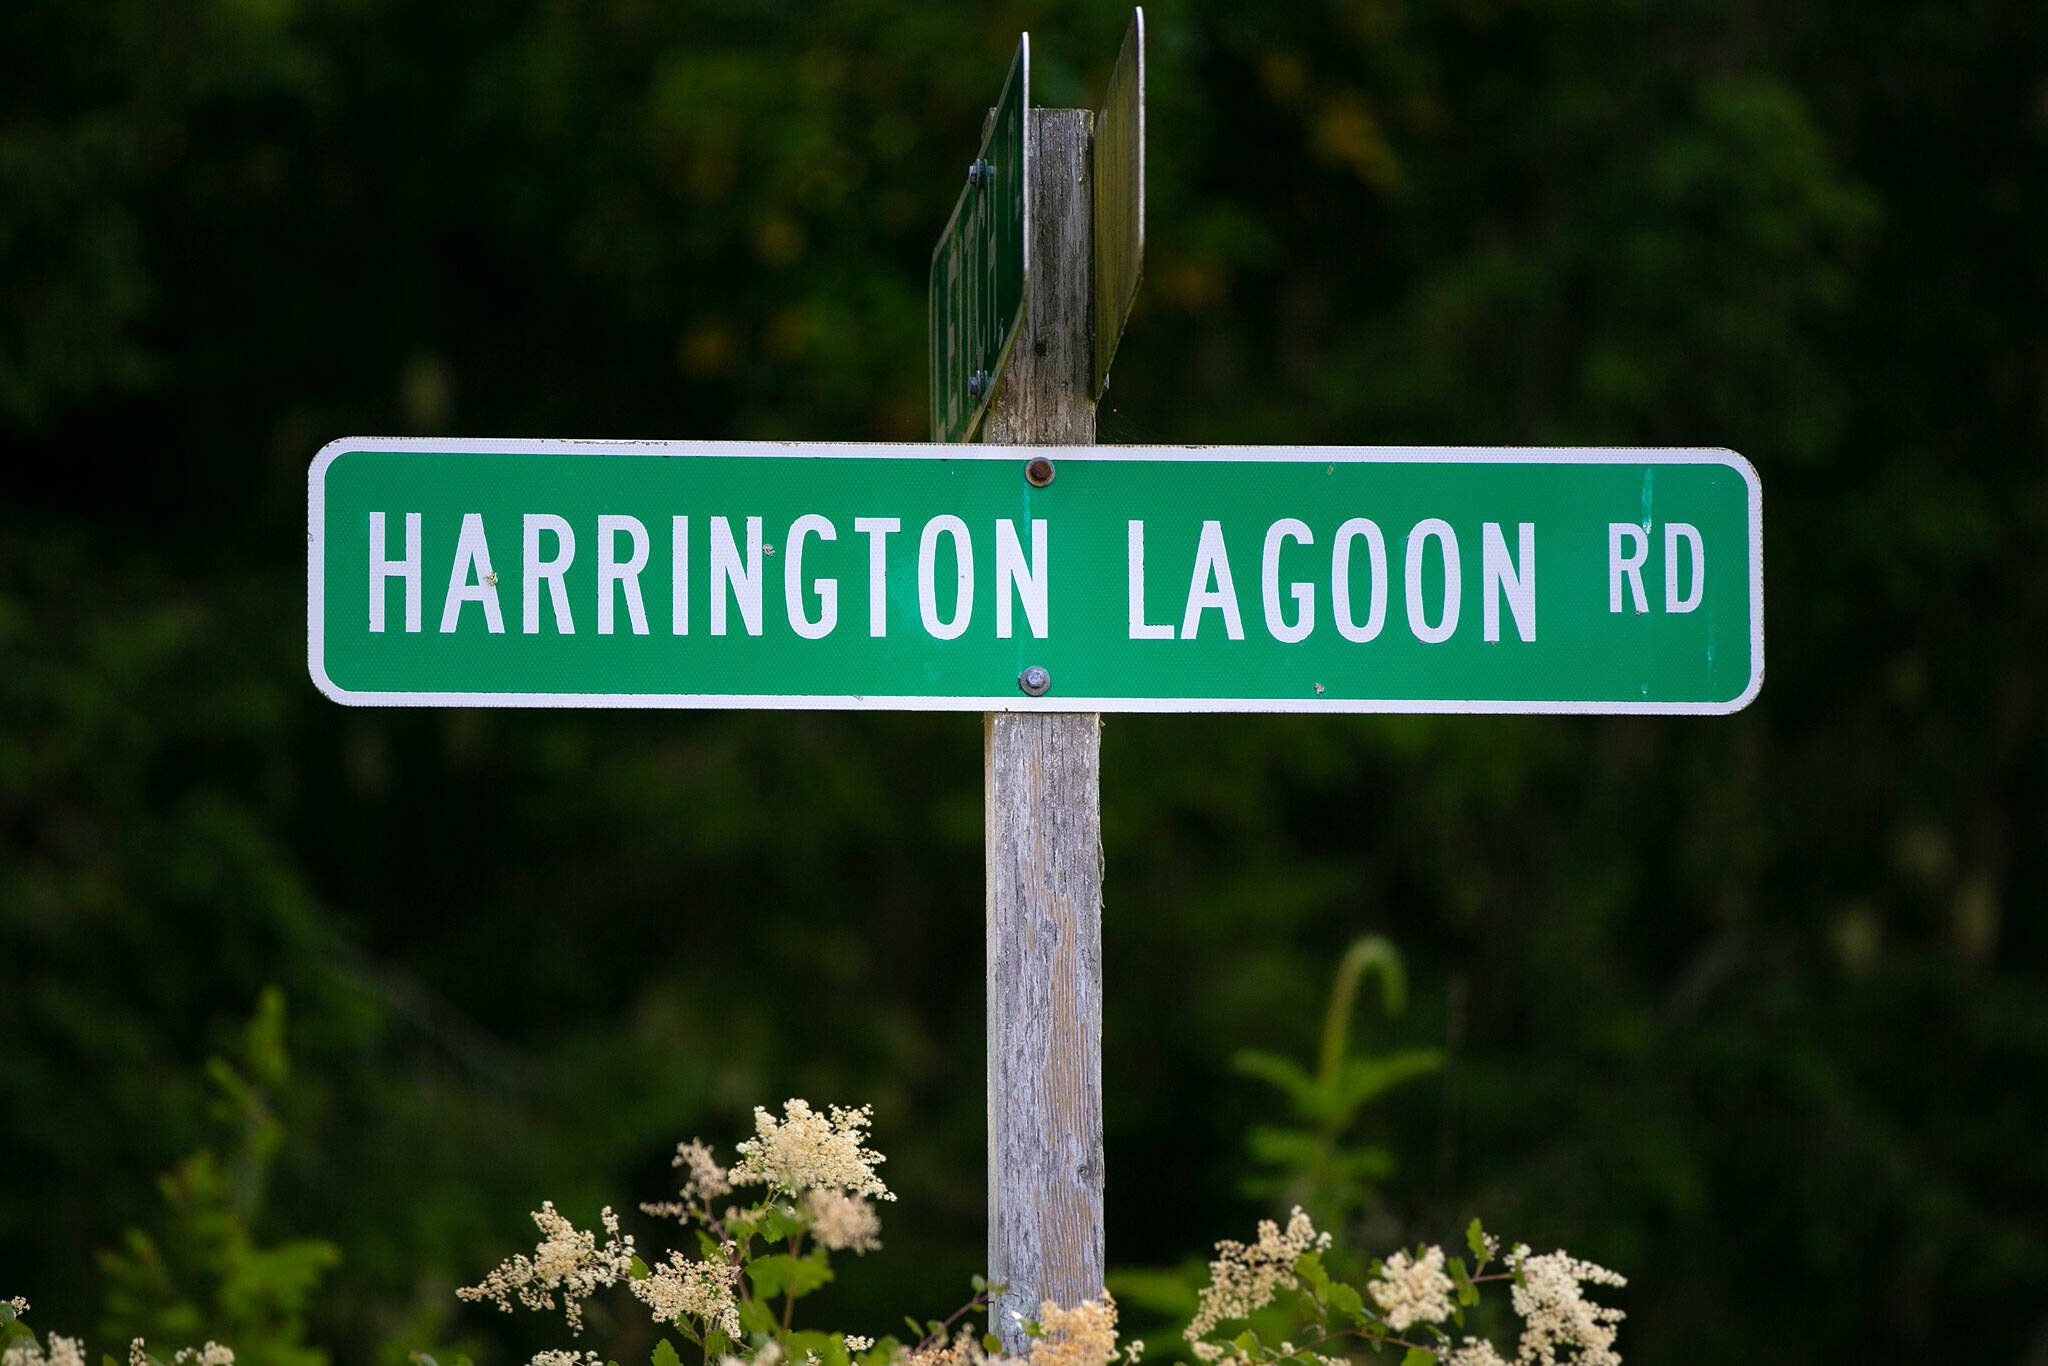 Harrington Lagoon Road runs through the Harrington Lagoon neighborhood on June 22, 2023, in Coupeville, Washington. (Ryan Berry / The Herald)